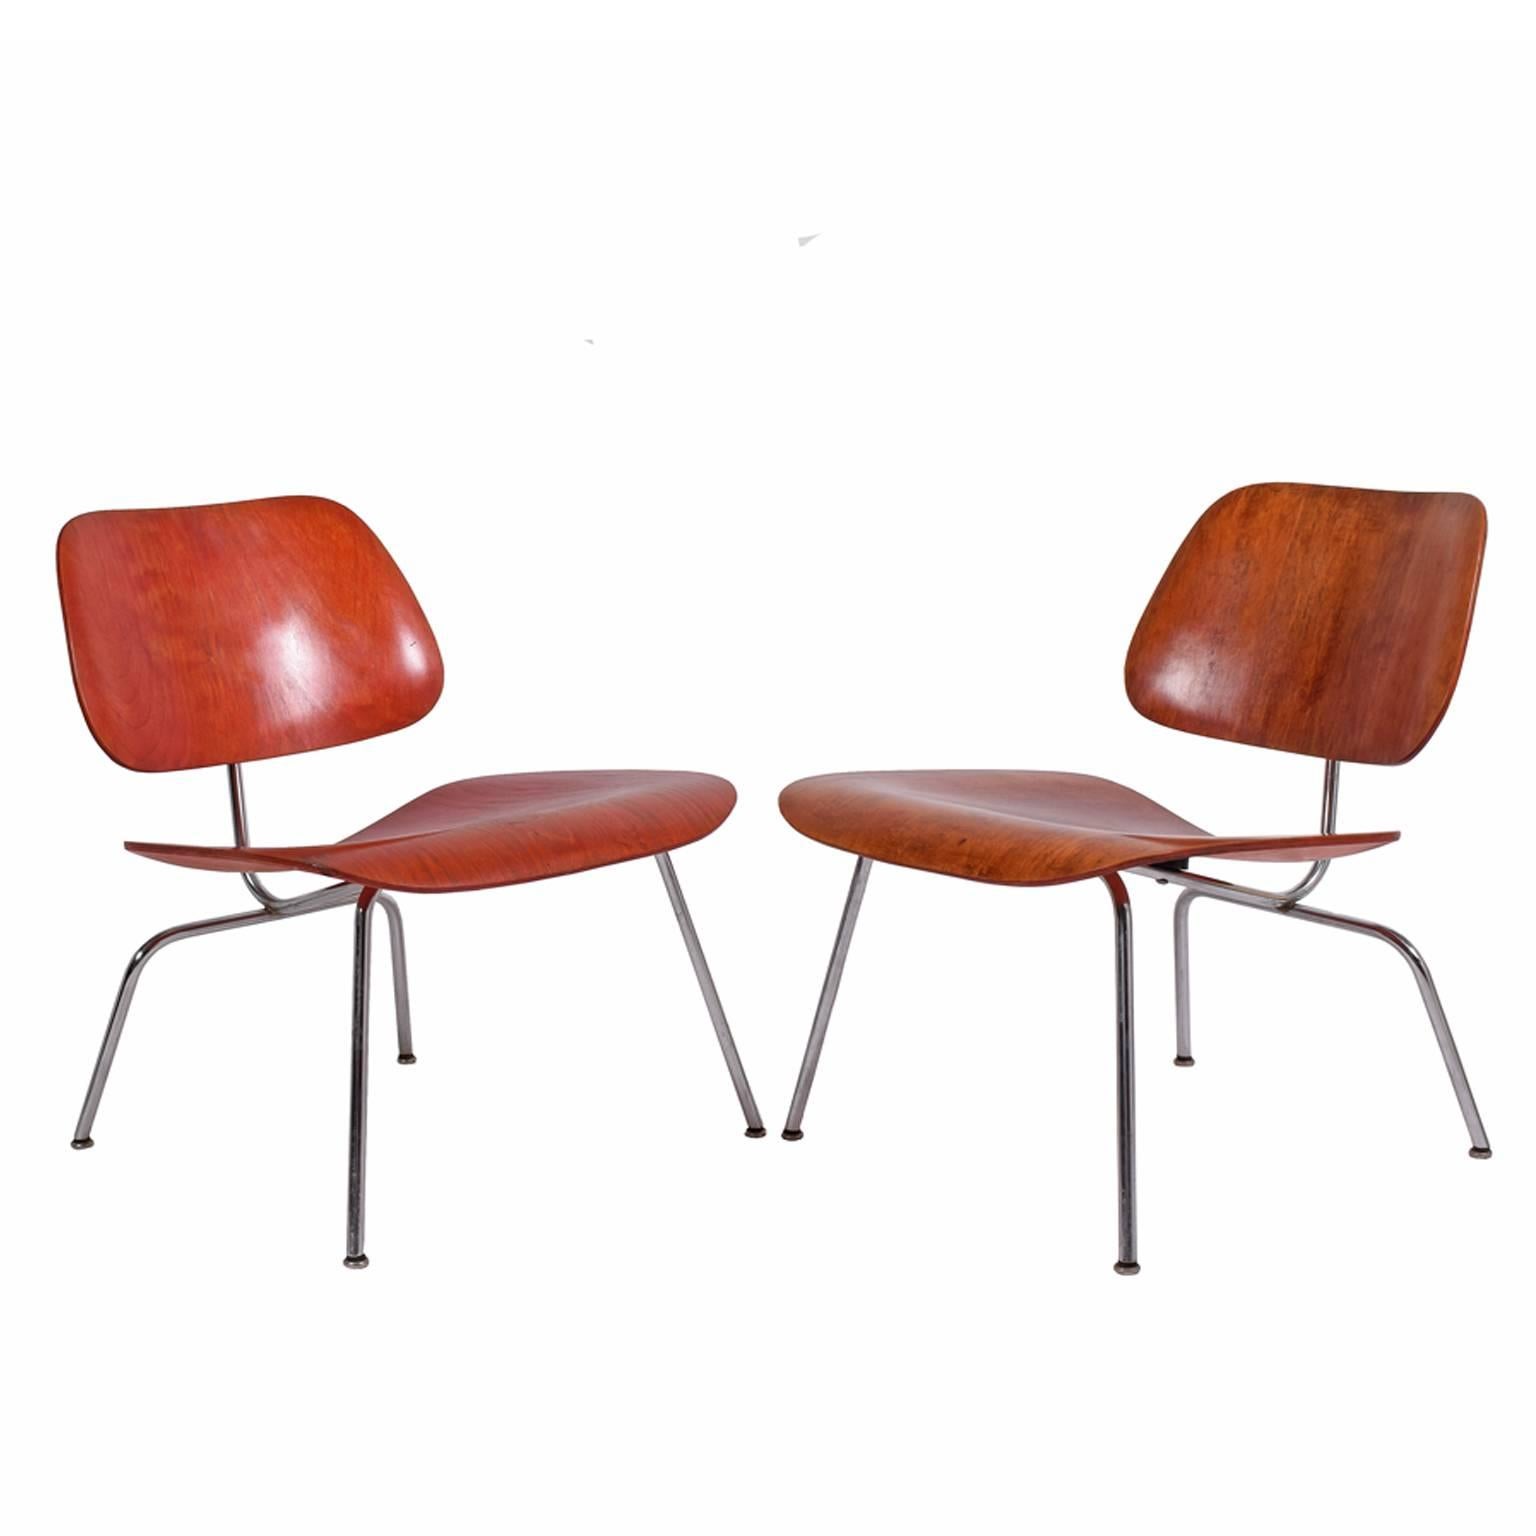 1950s  les chaises de salon easy jouent avec des dossiers et des sièges en bois sur des bases en acier solide, production anticipée.
